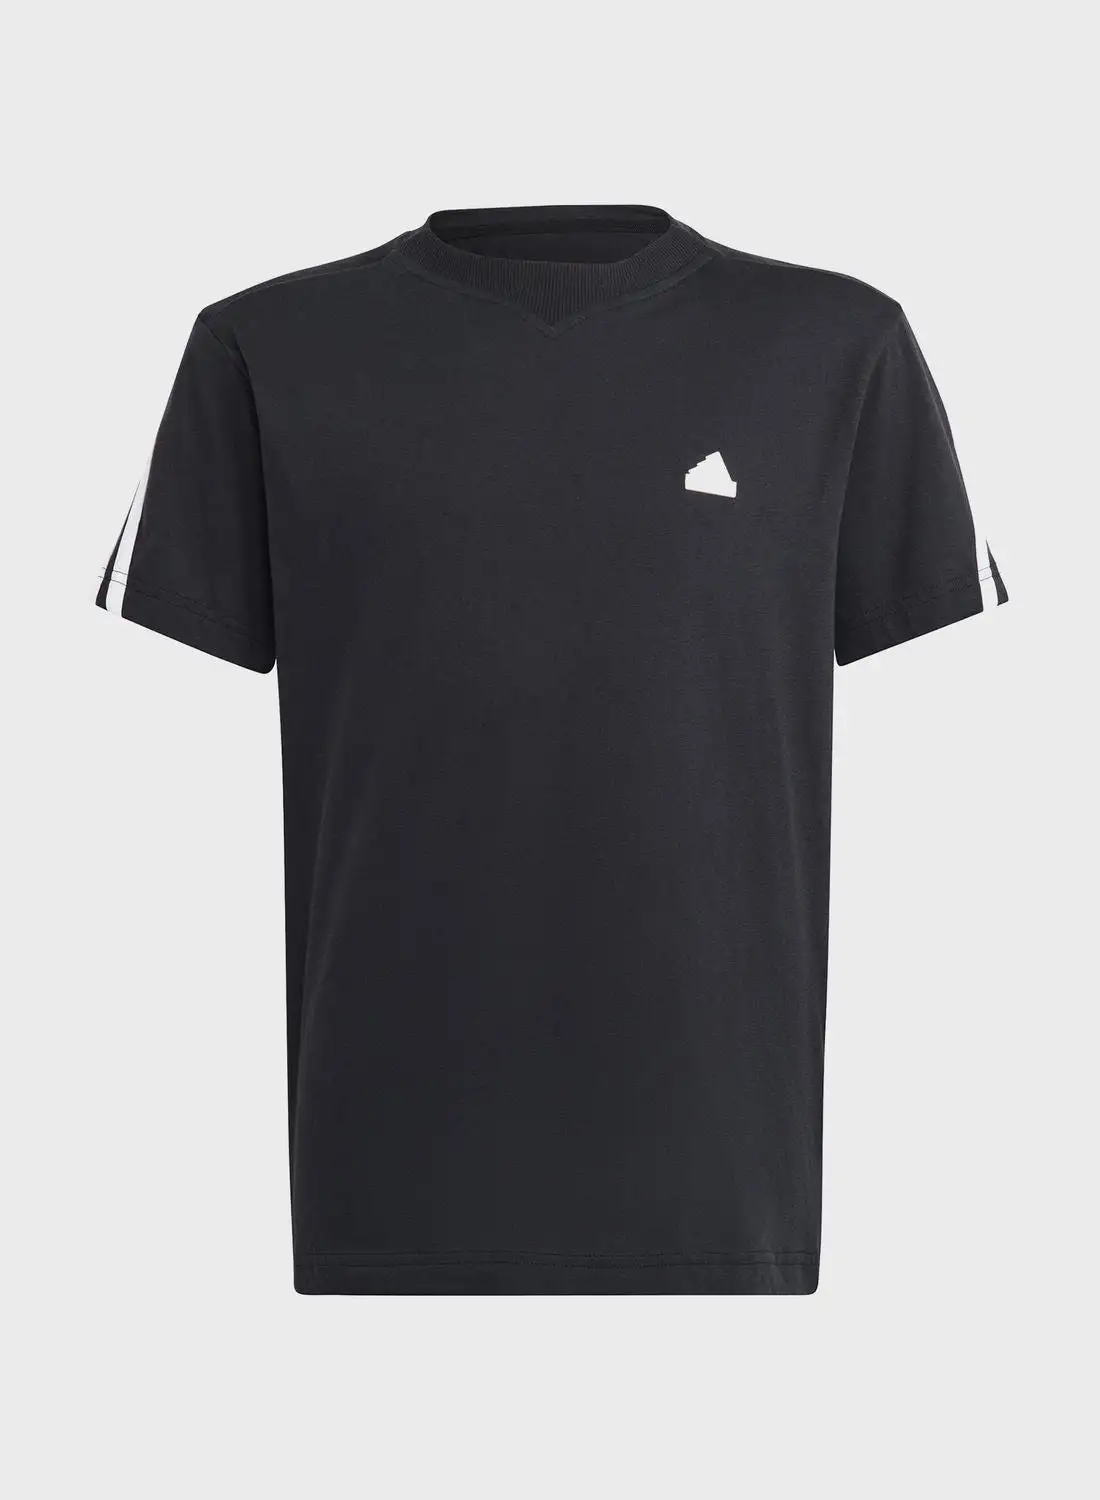 Adidas Future Icons 3 Stripes T-shirt